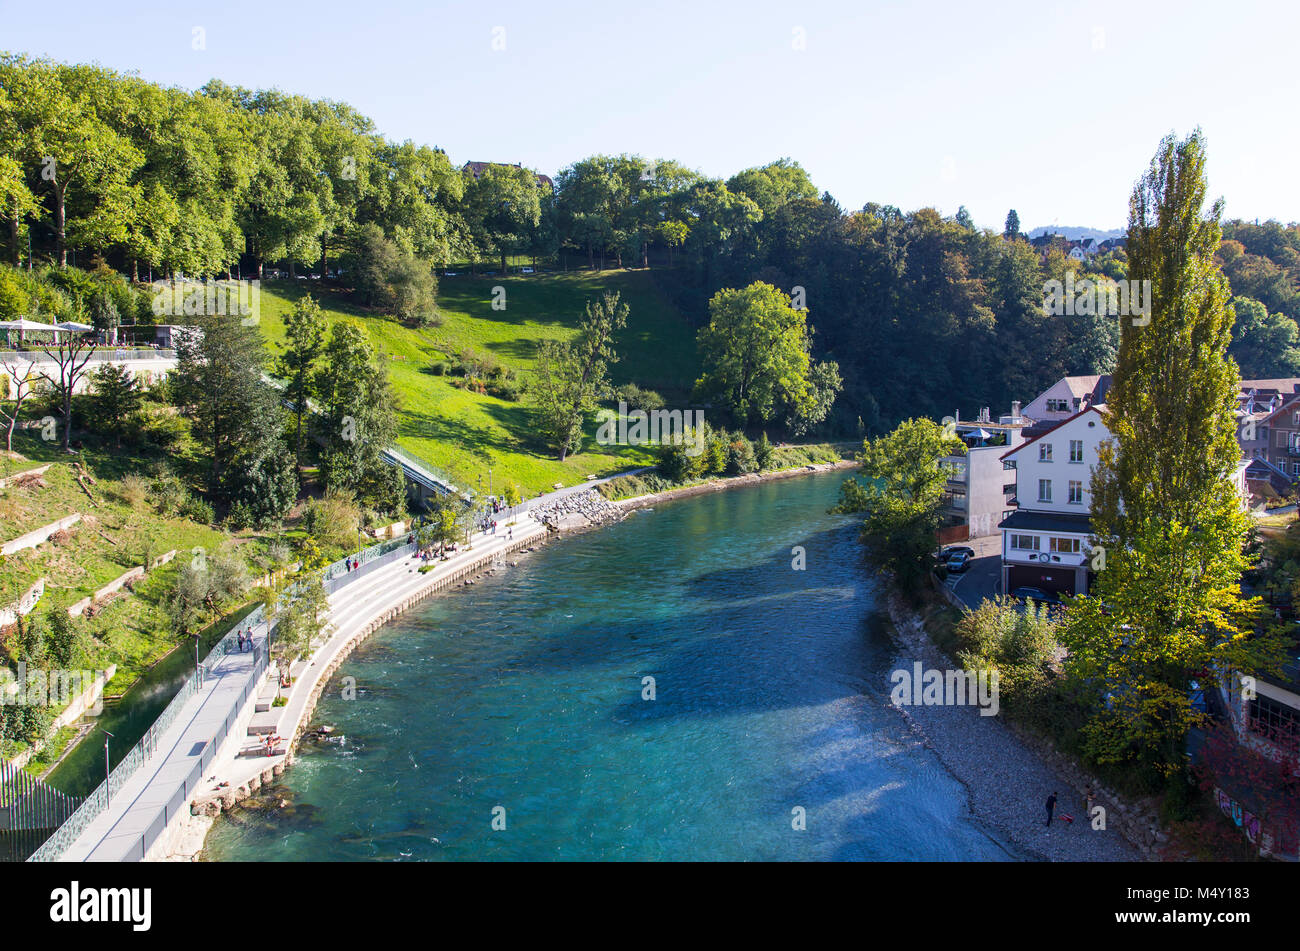 City of Bern in Switzerland Stock Photo